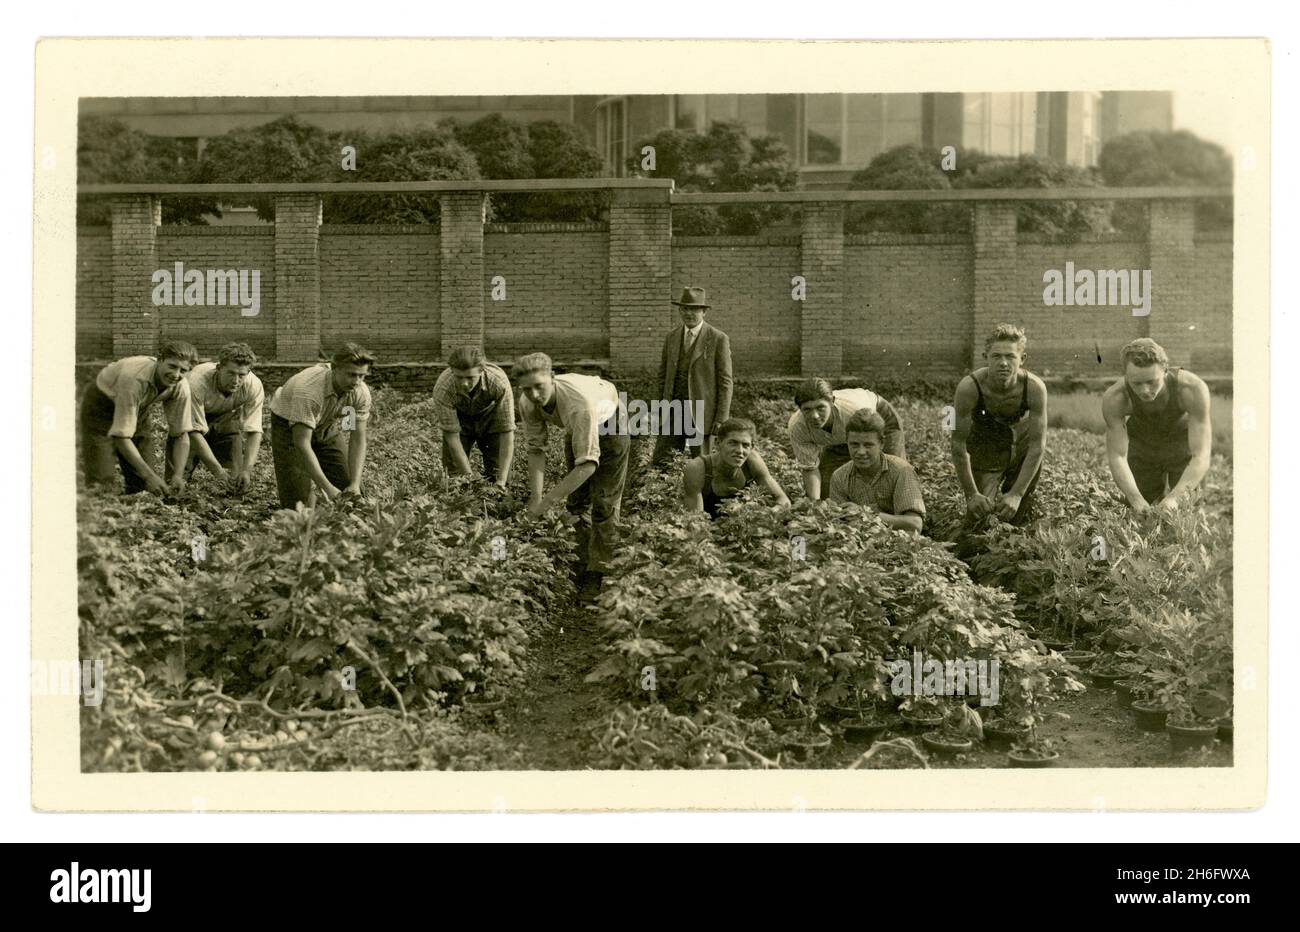 Anfang des 20. Jahrhunderts Postkarte von fitgen jungen Männern, landwirtschaftlichen Studenten, Arbeitern, Gärtnern und Arbeiten in einer Gärtnerei, mit einem Manager oder Aufseher, europäisch, um 1930er Jahre Stockfoto